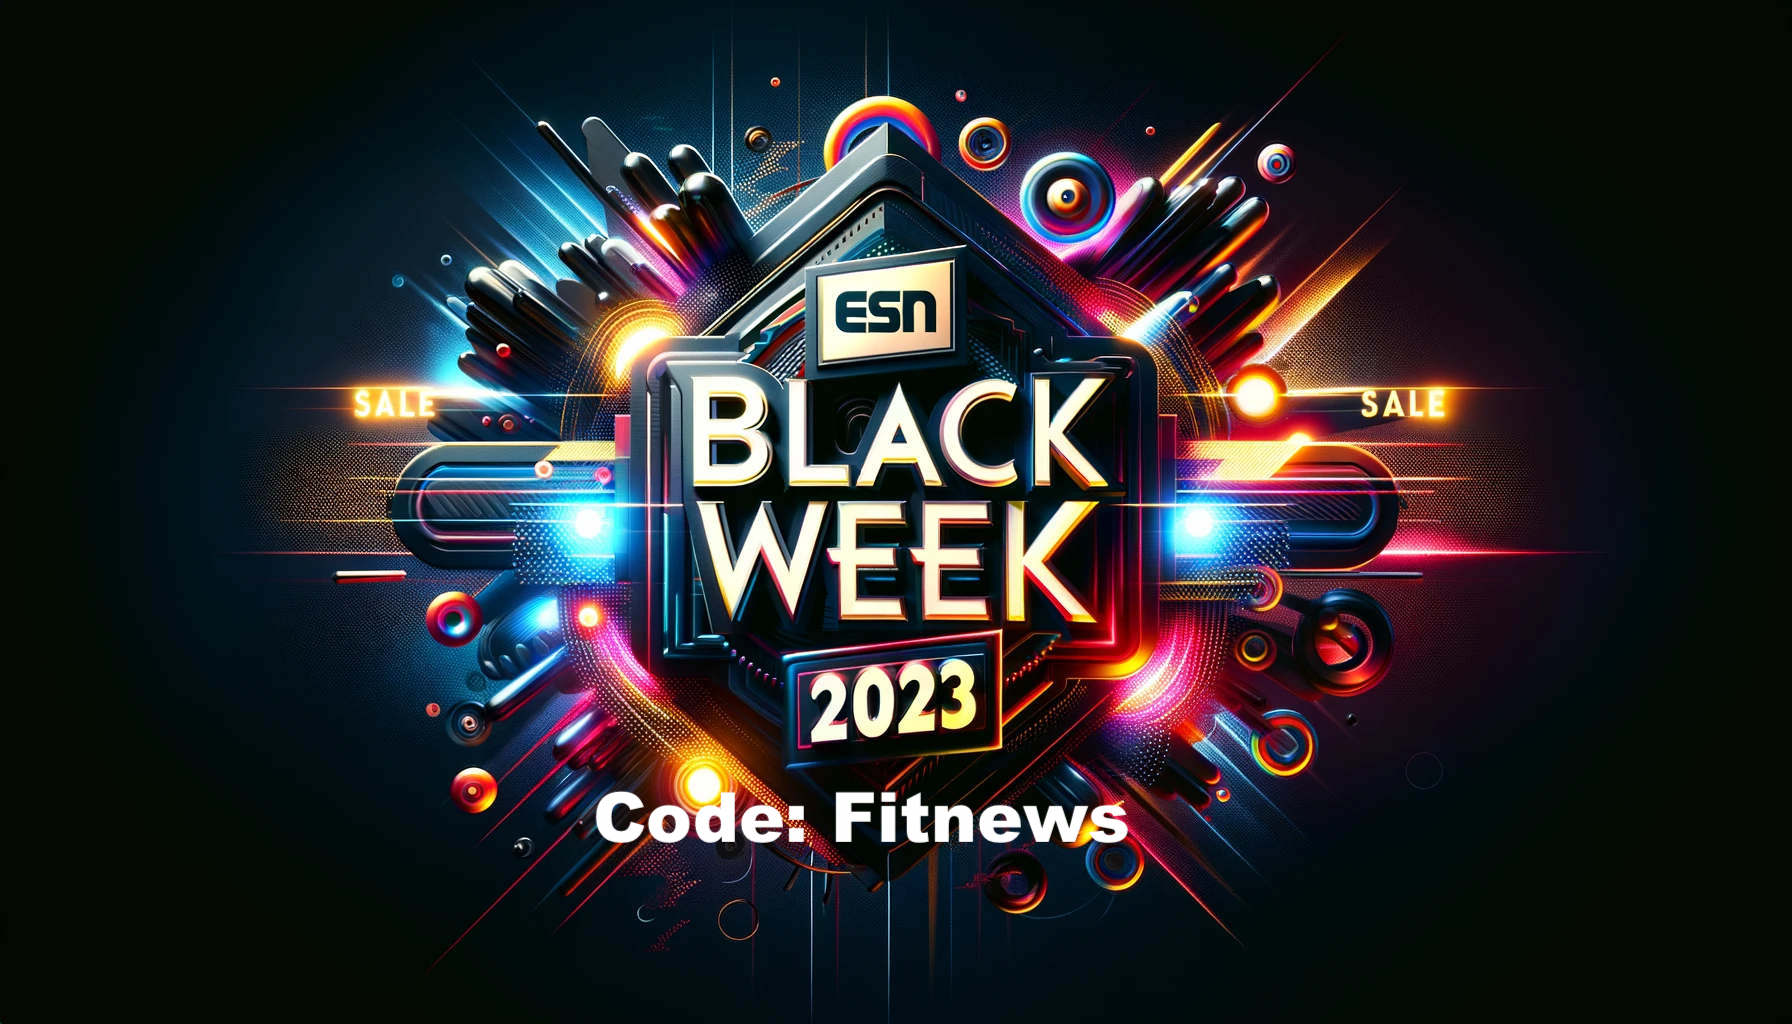 ESN Black Week 2023